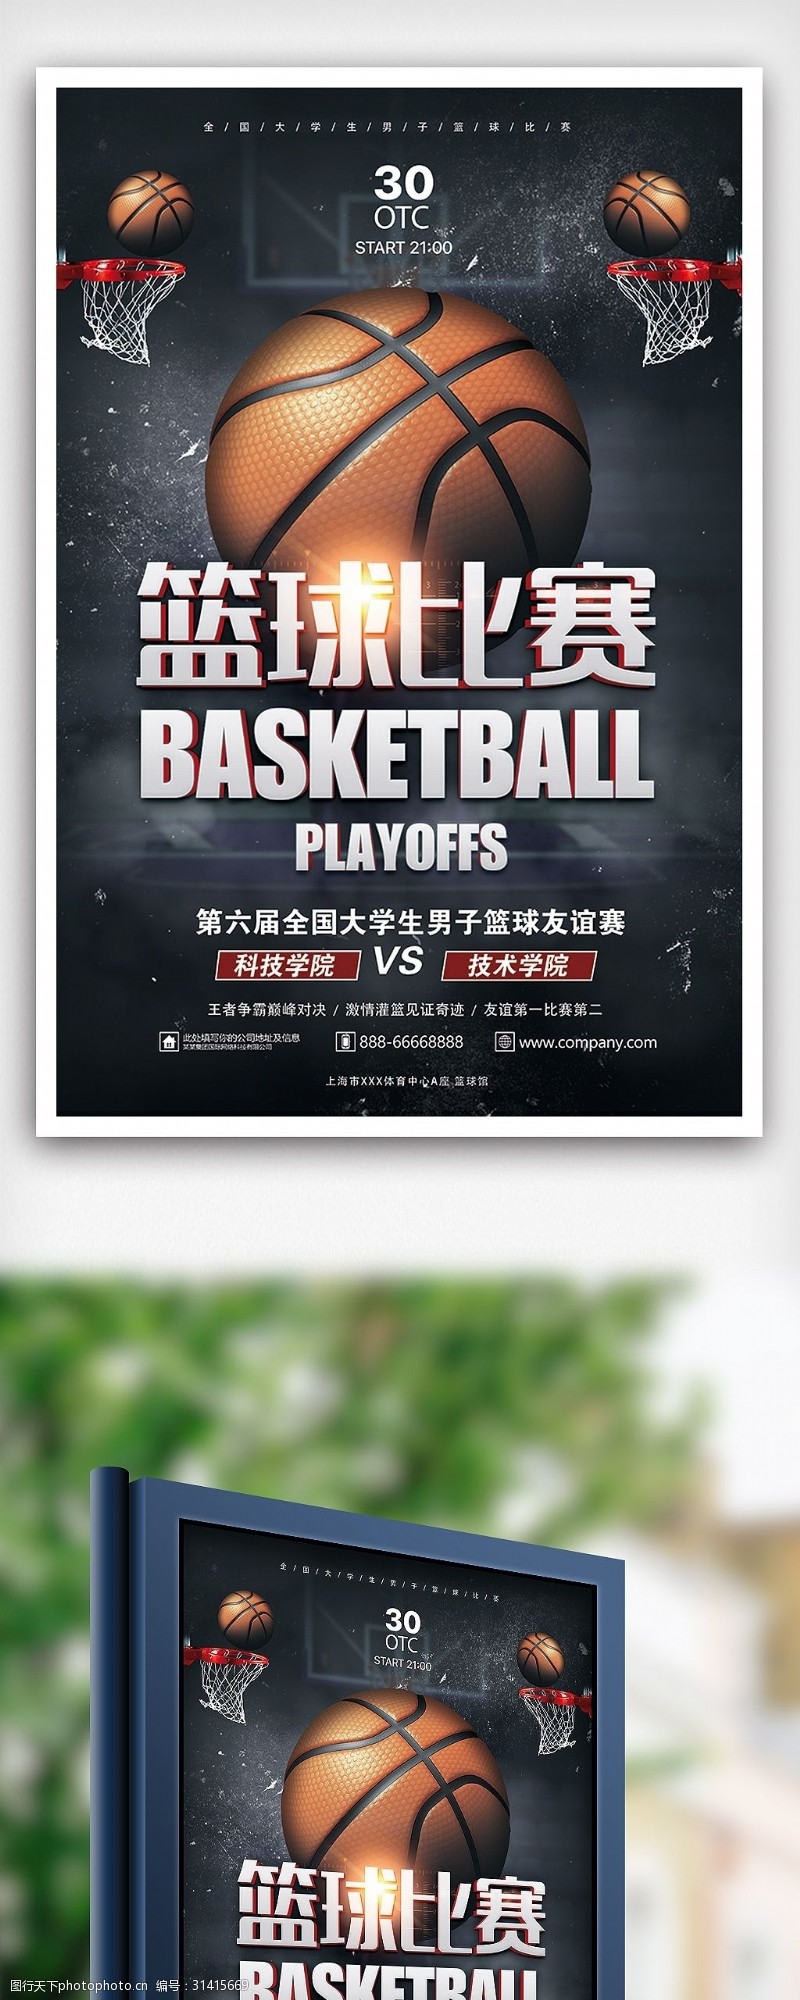 竞技体育素材下载大学生篮球比赛体育竞技海报